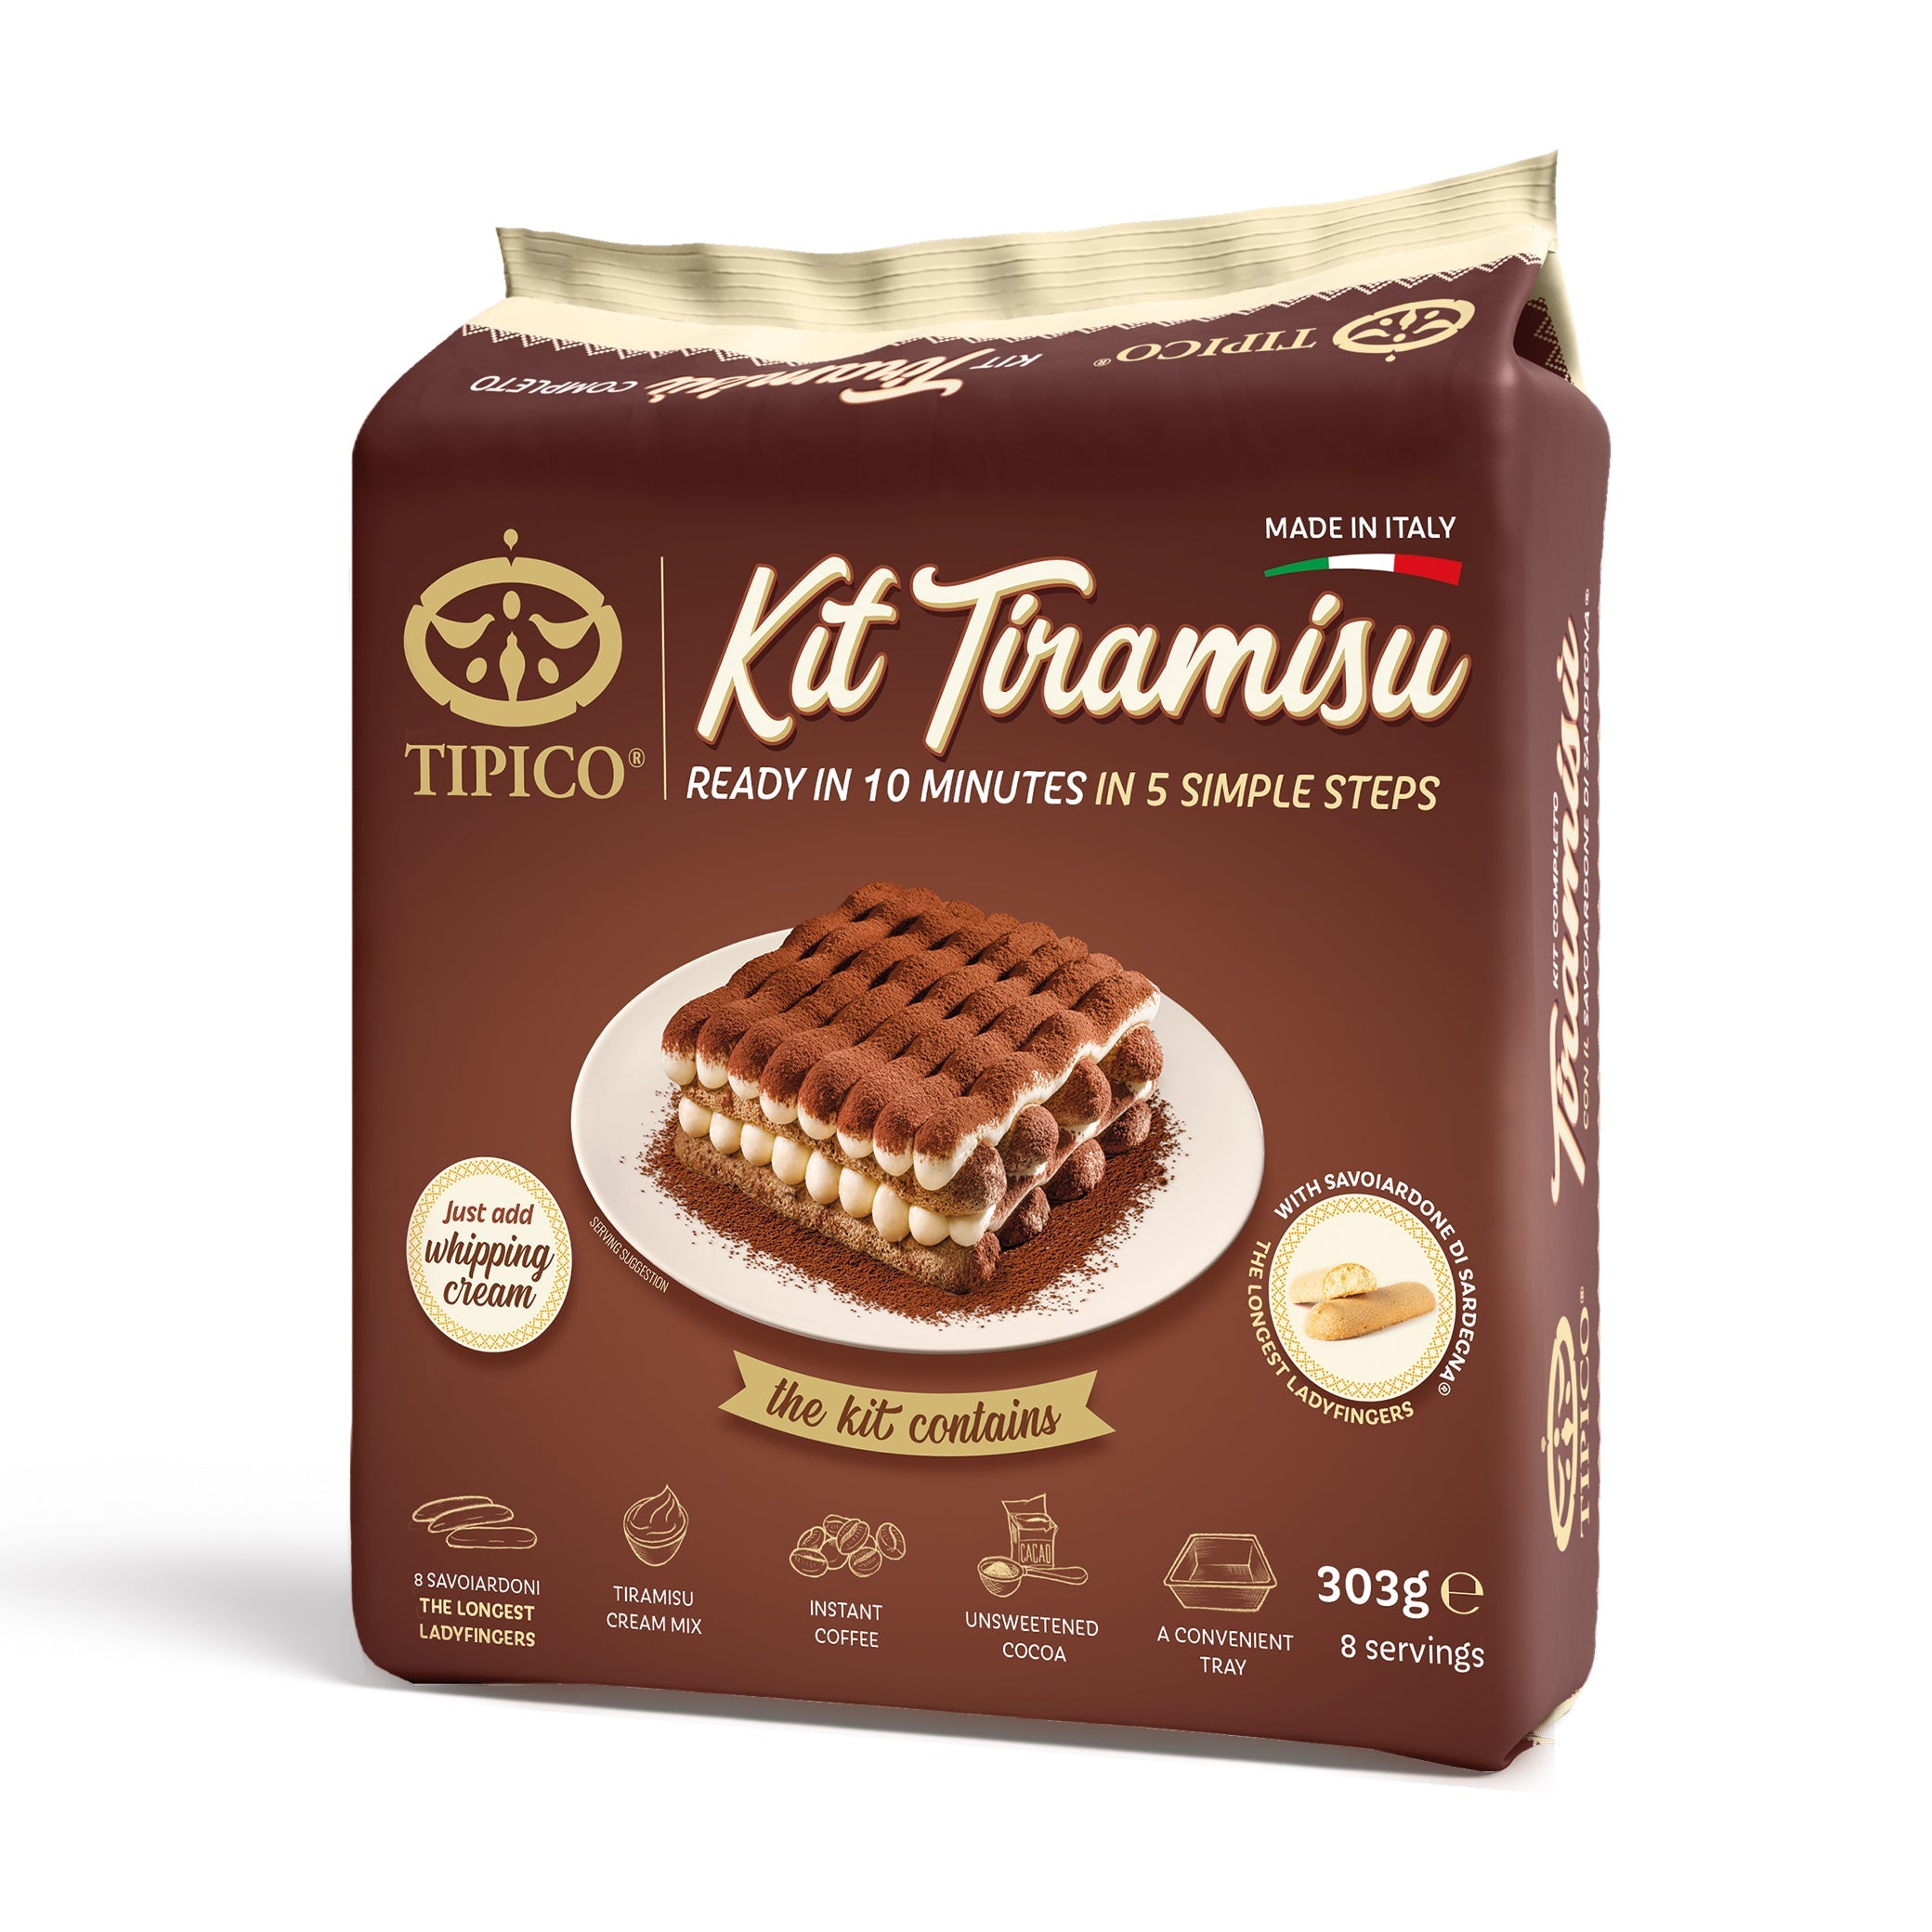 » Tipico Kit Tiramisu Cake 303g (100% off)